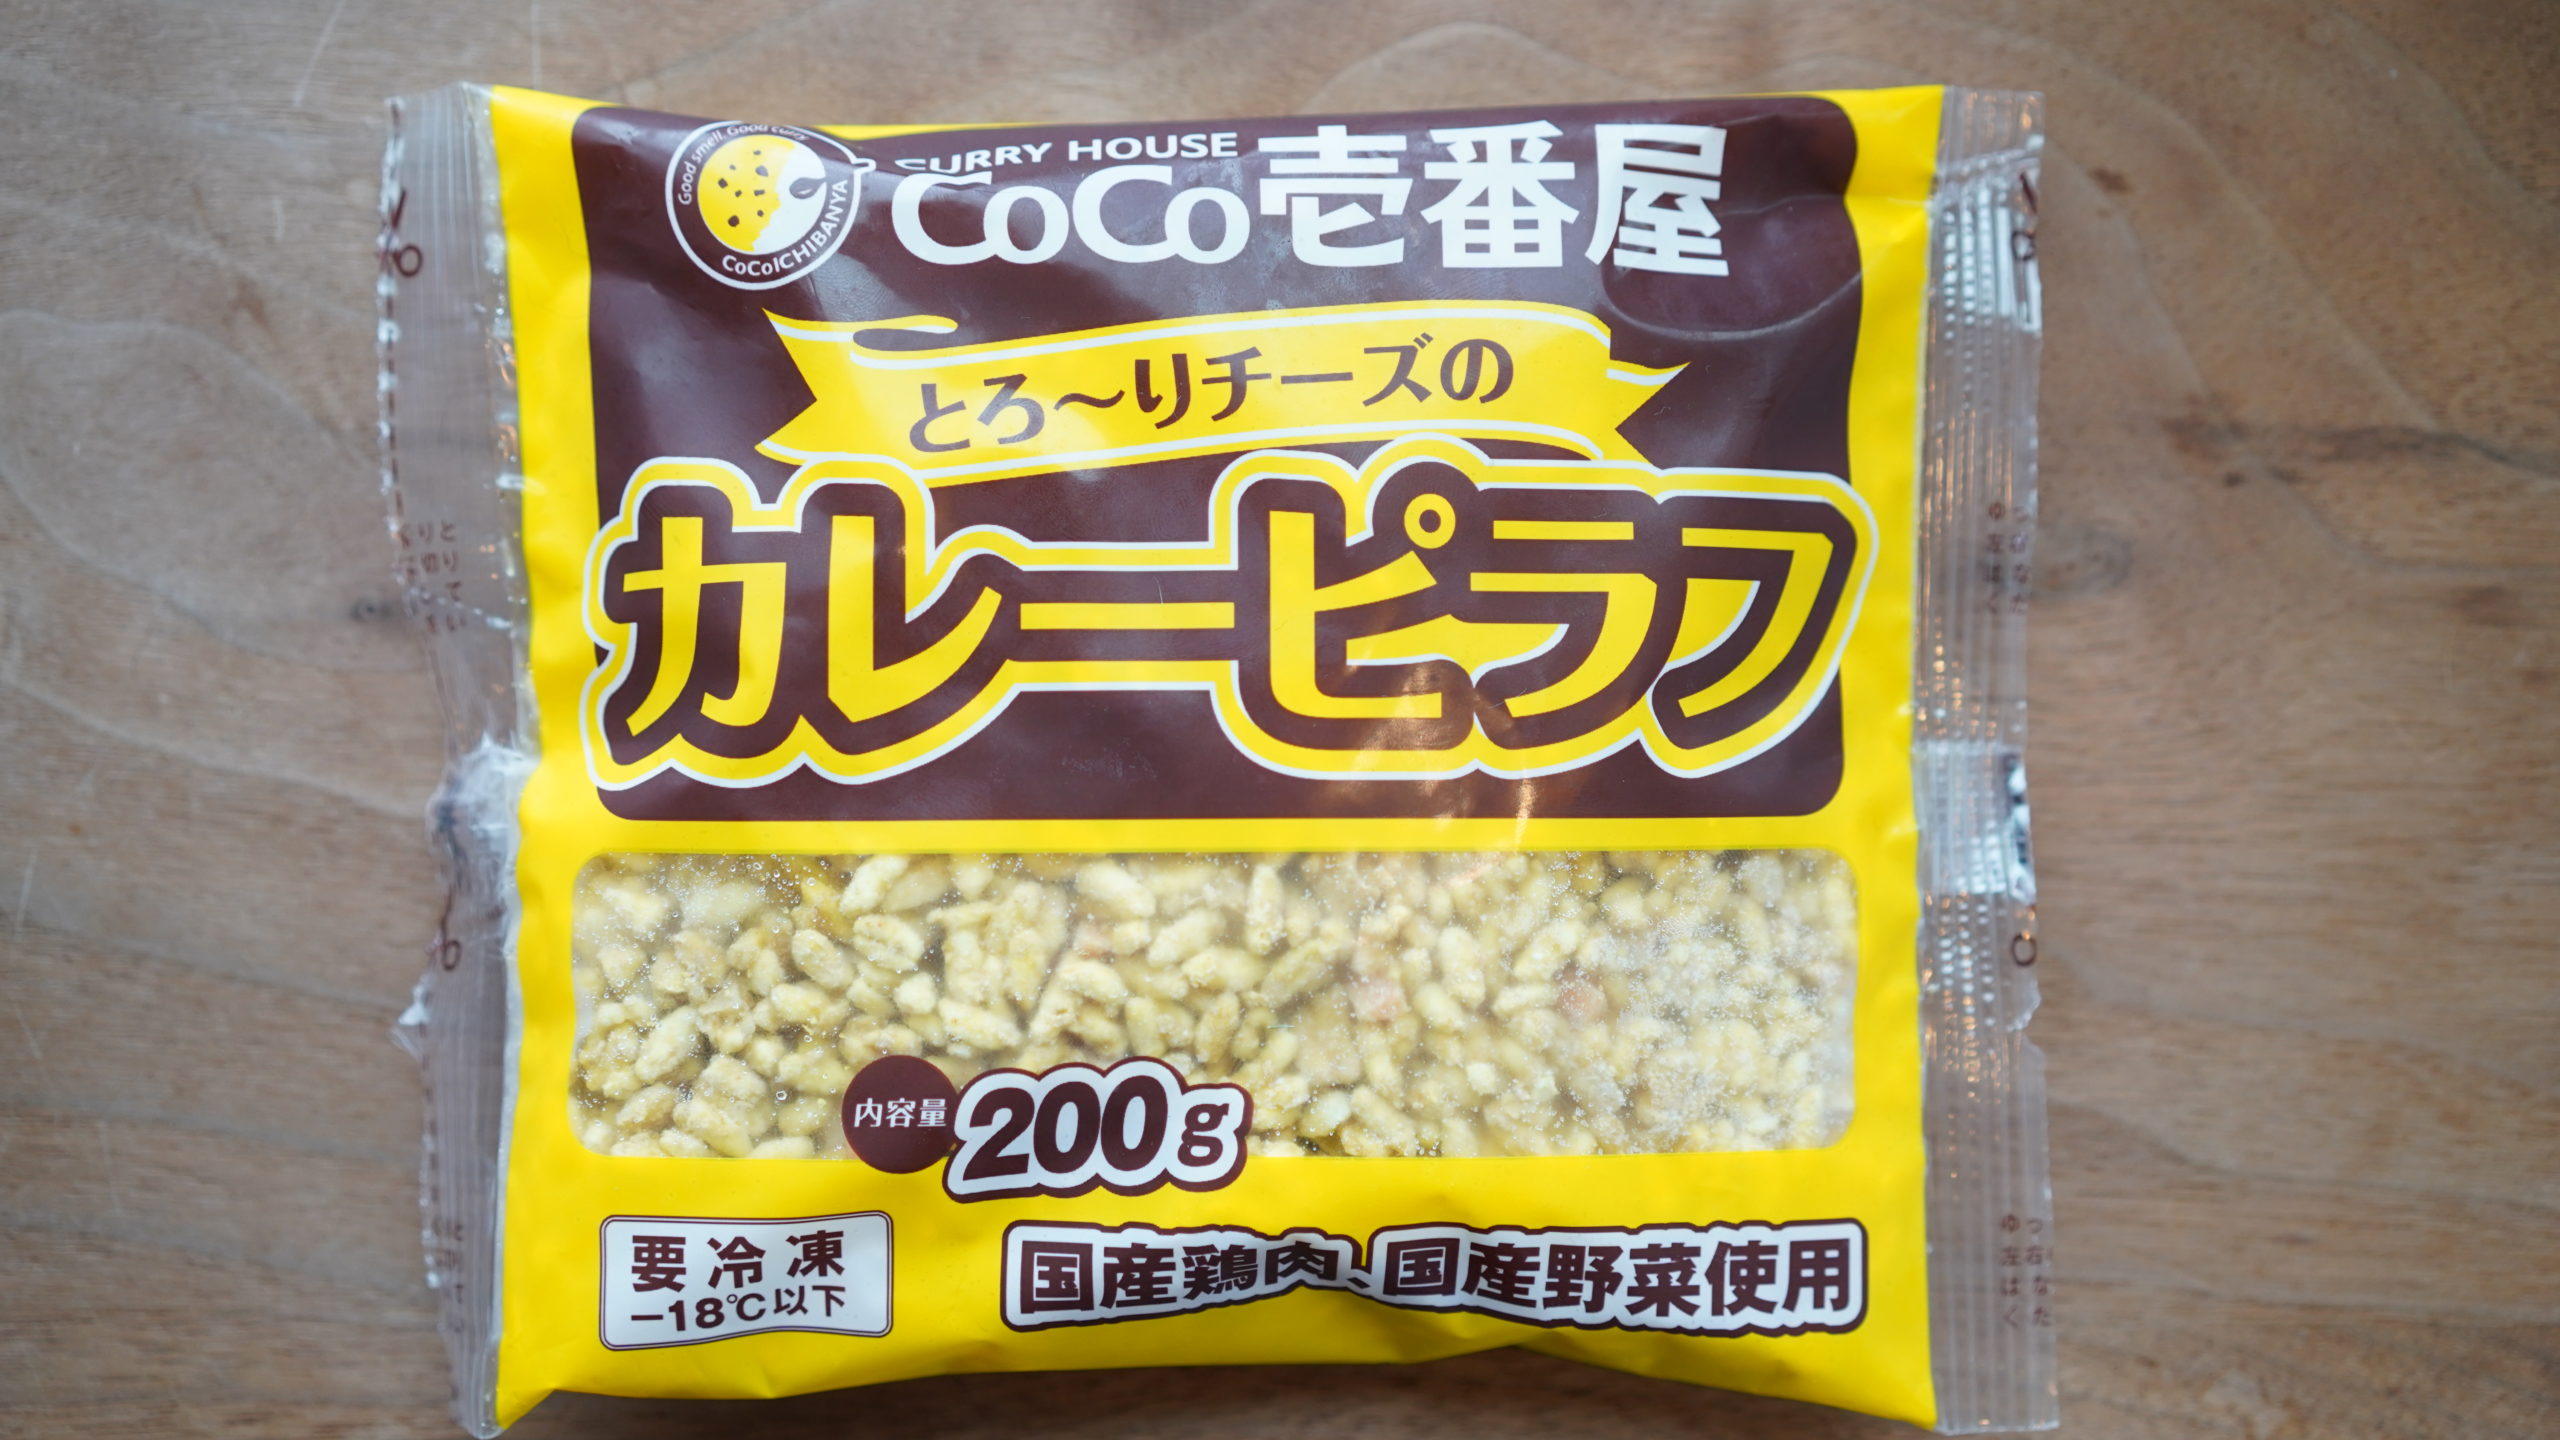 生協coop宅配の冷凍食品「CoCo壱番屋とろ〜りチーズのカレーピラフ」のパッケージ写真